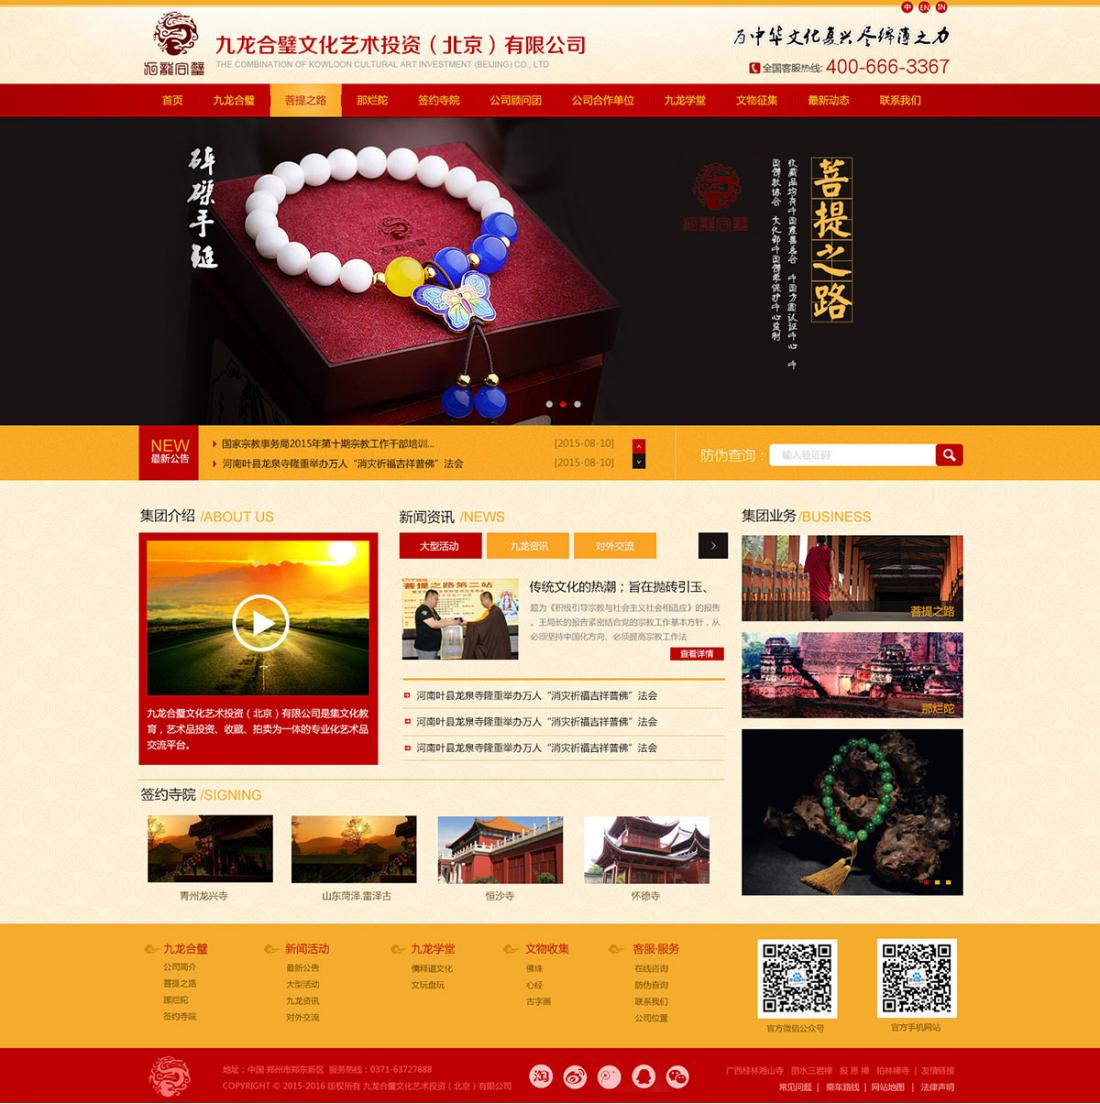 郑州营销型网站建设公司哪家好 郑州营销型网站有什么好处 郑州营销型网站建设好吗